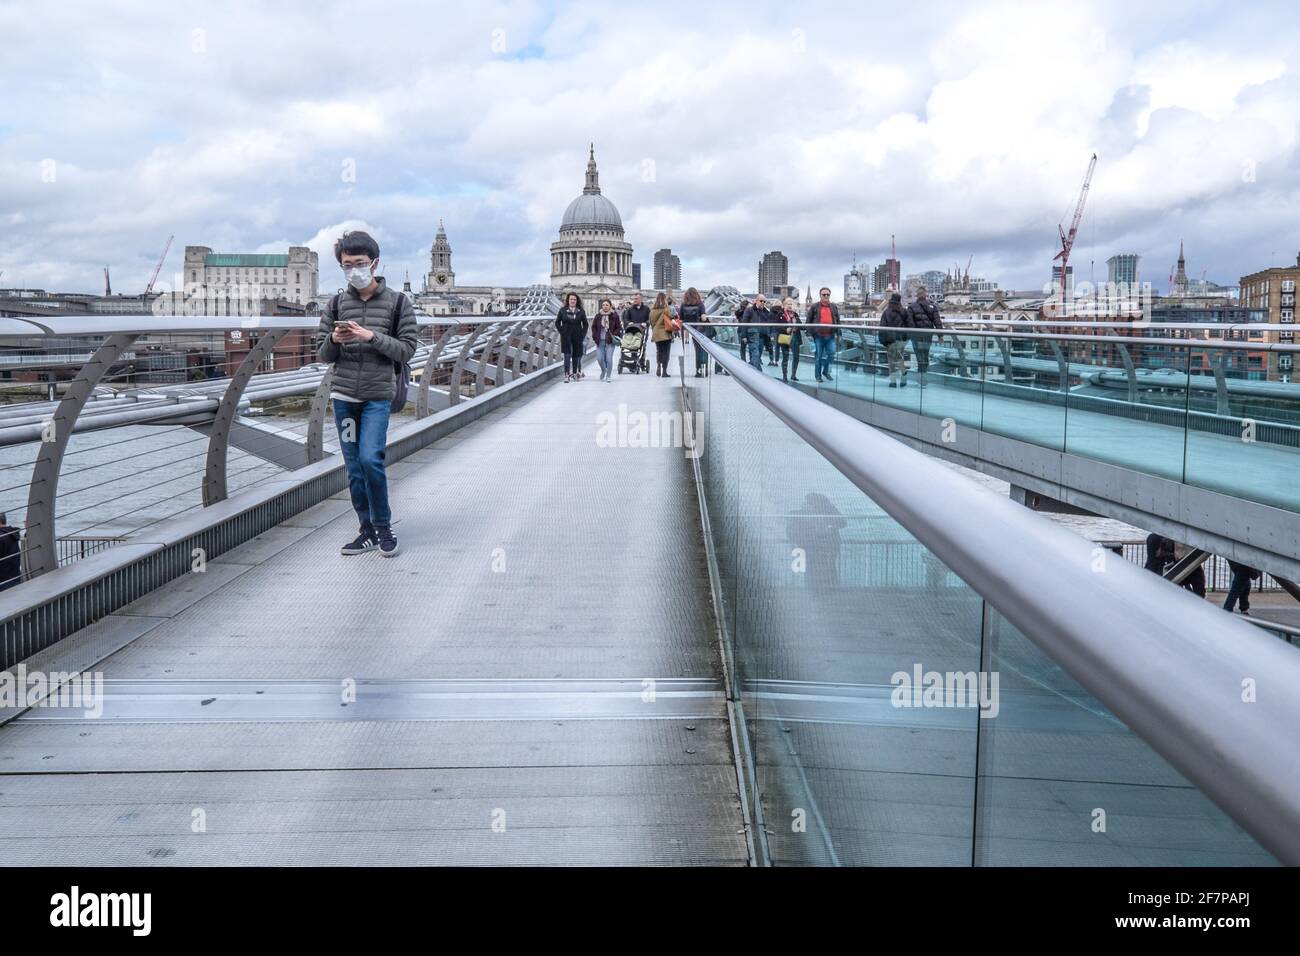 Londra, Inghilterra, Regno Unito - 15 marzo 2020 - persona che cammina sul Millennium Bridge indossando la maschera guardando il dispositivo del telefono cellulare Foto Stock